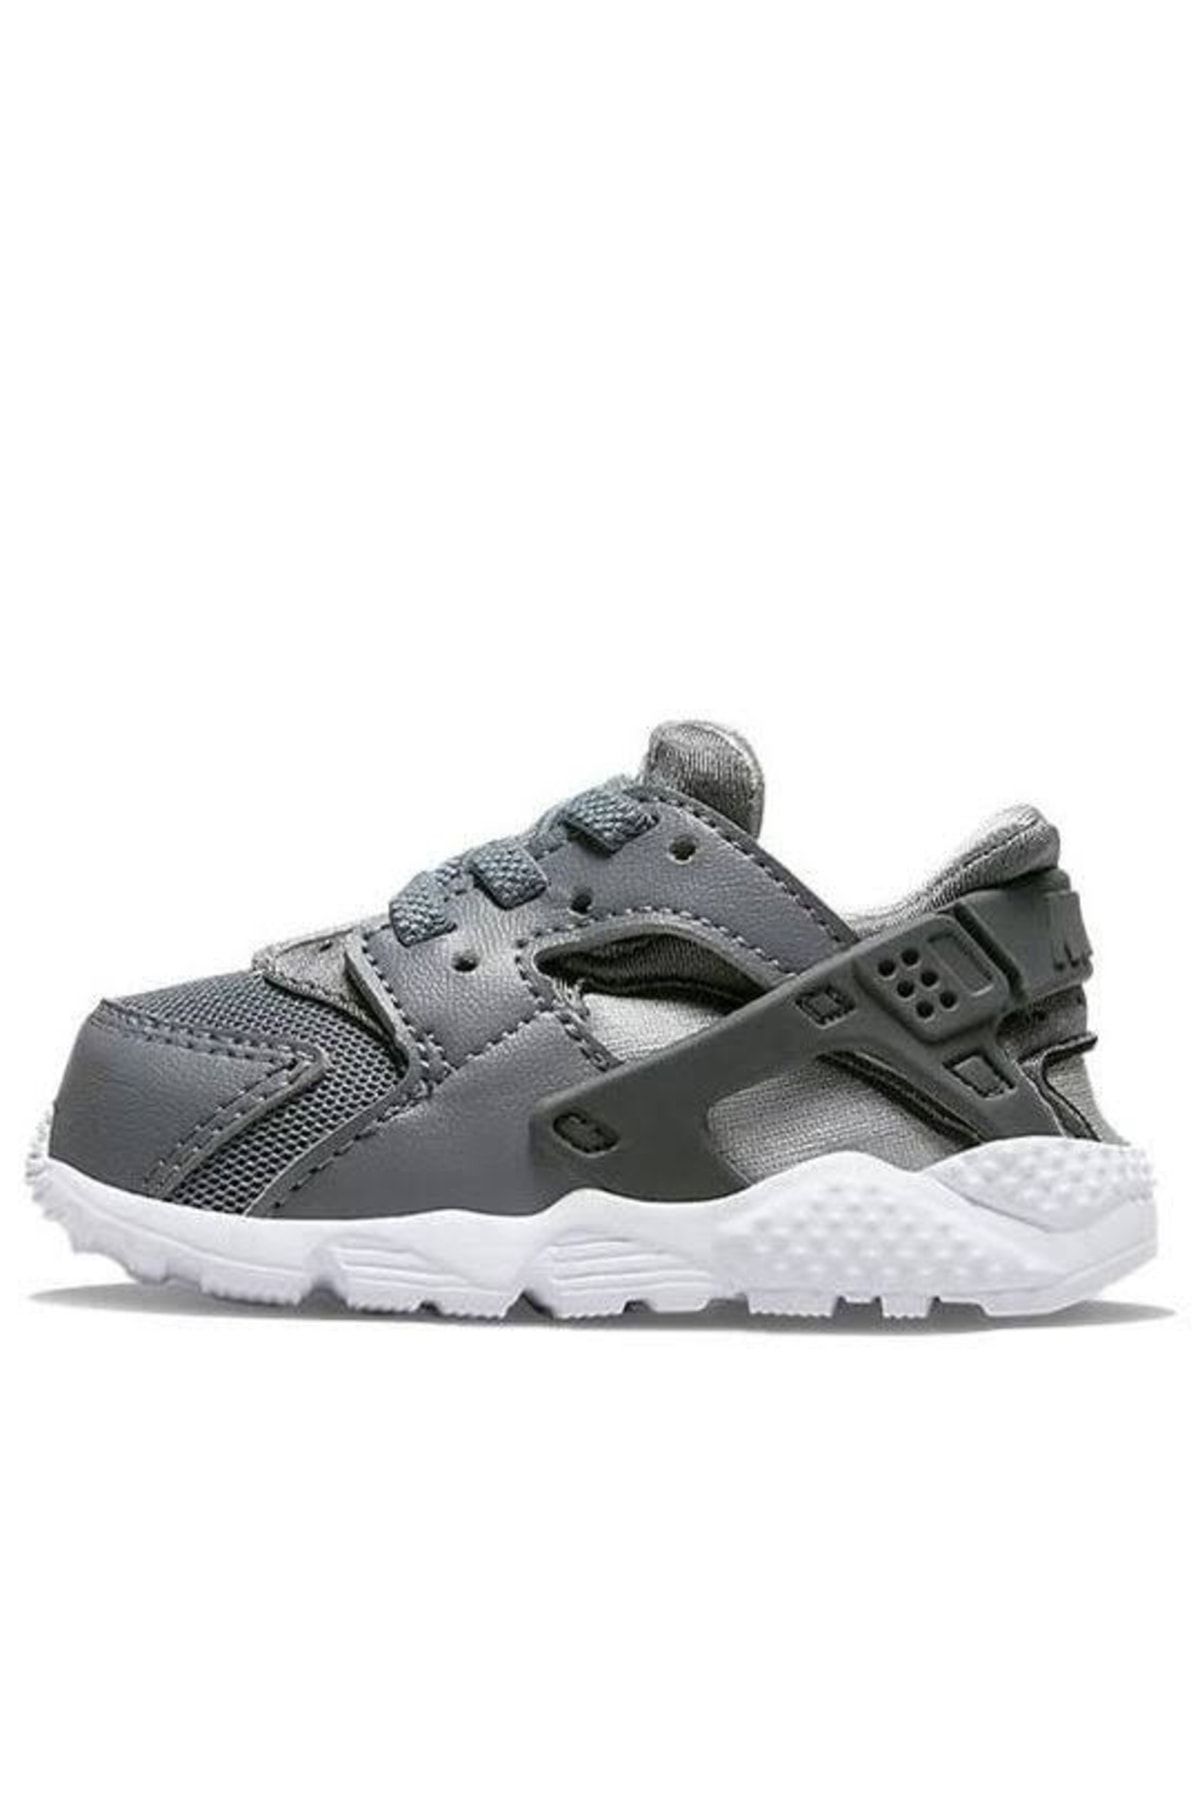 Nike Huarache Baby & Toddler Shoe - Grey - 704950-012 Bebek Spor Ayakkabı Stilim Spor